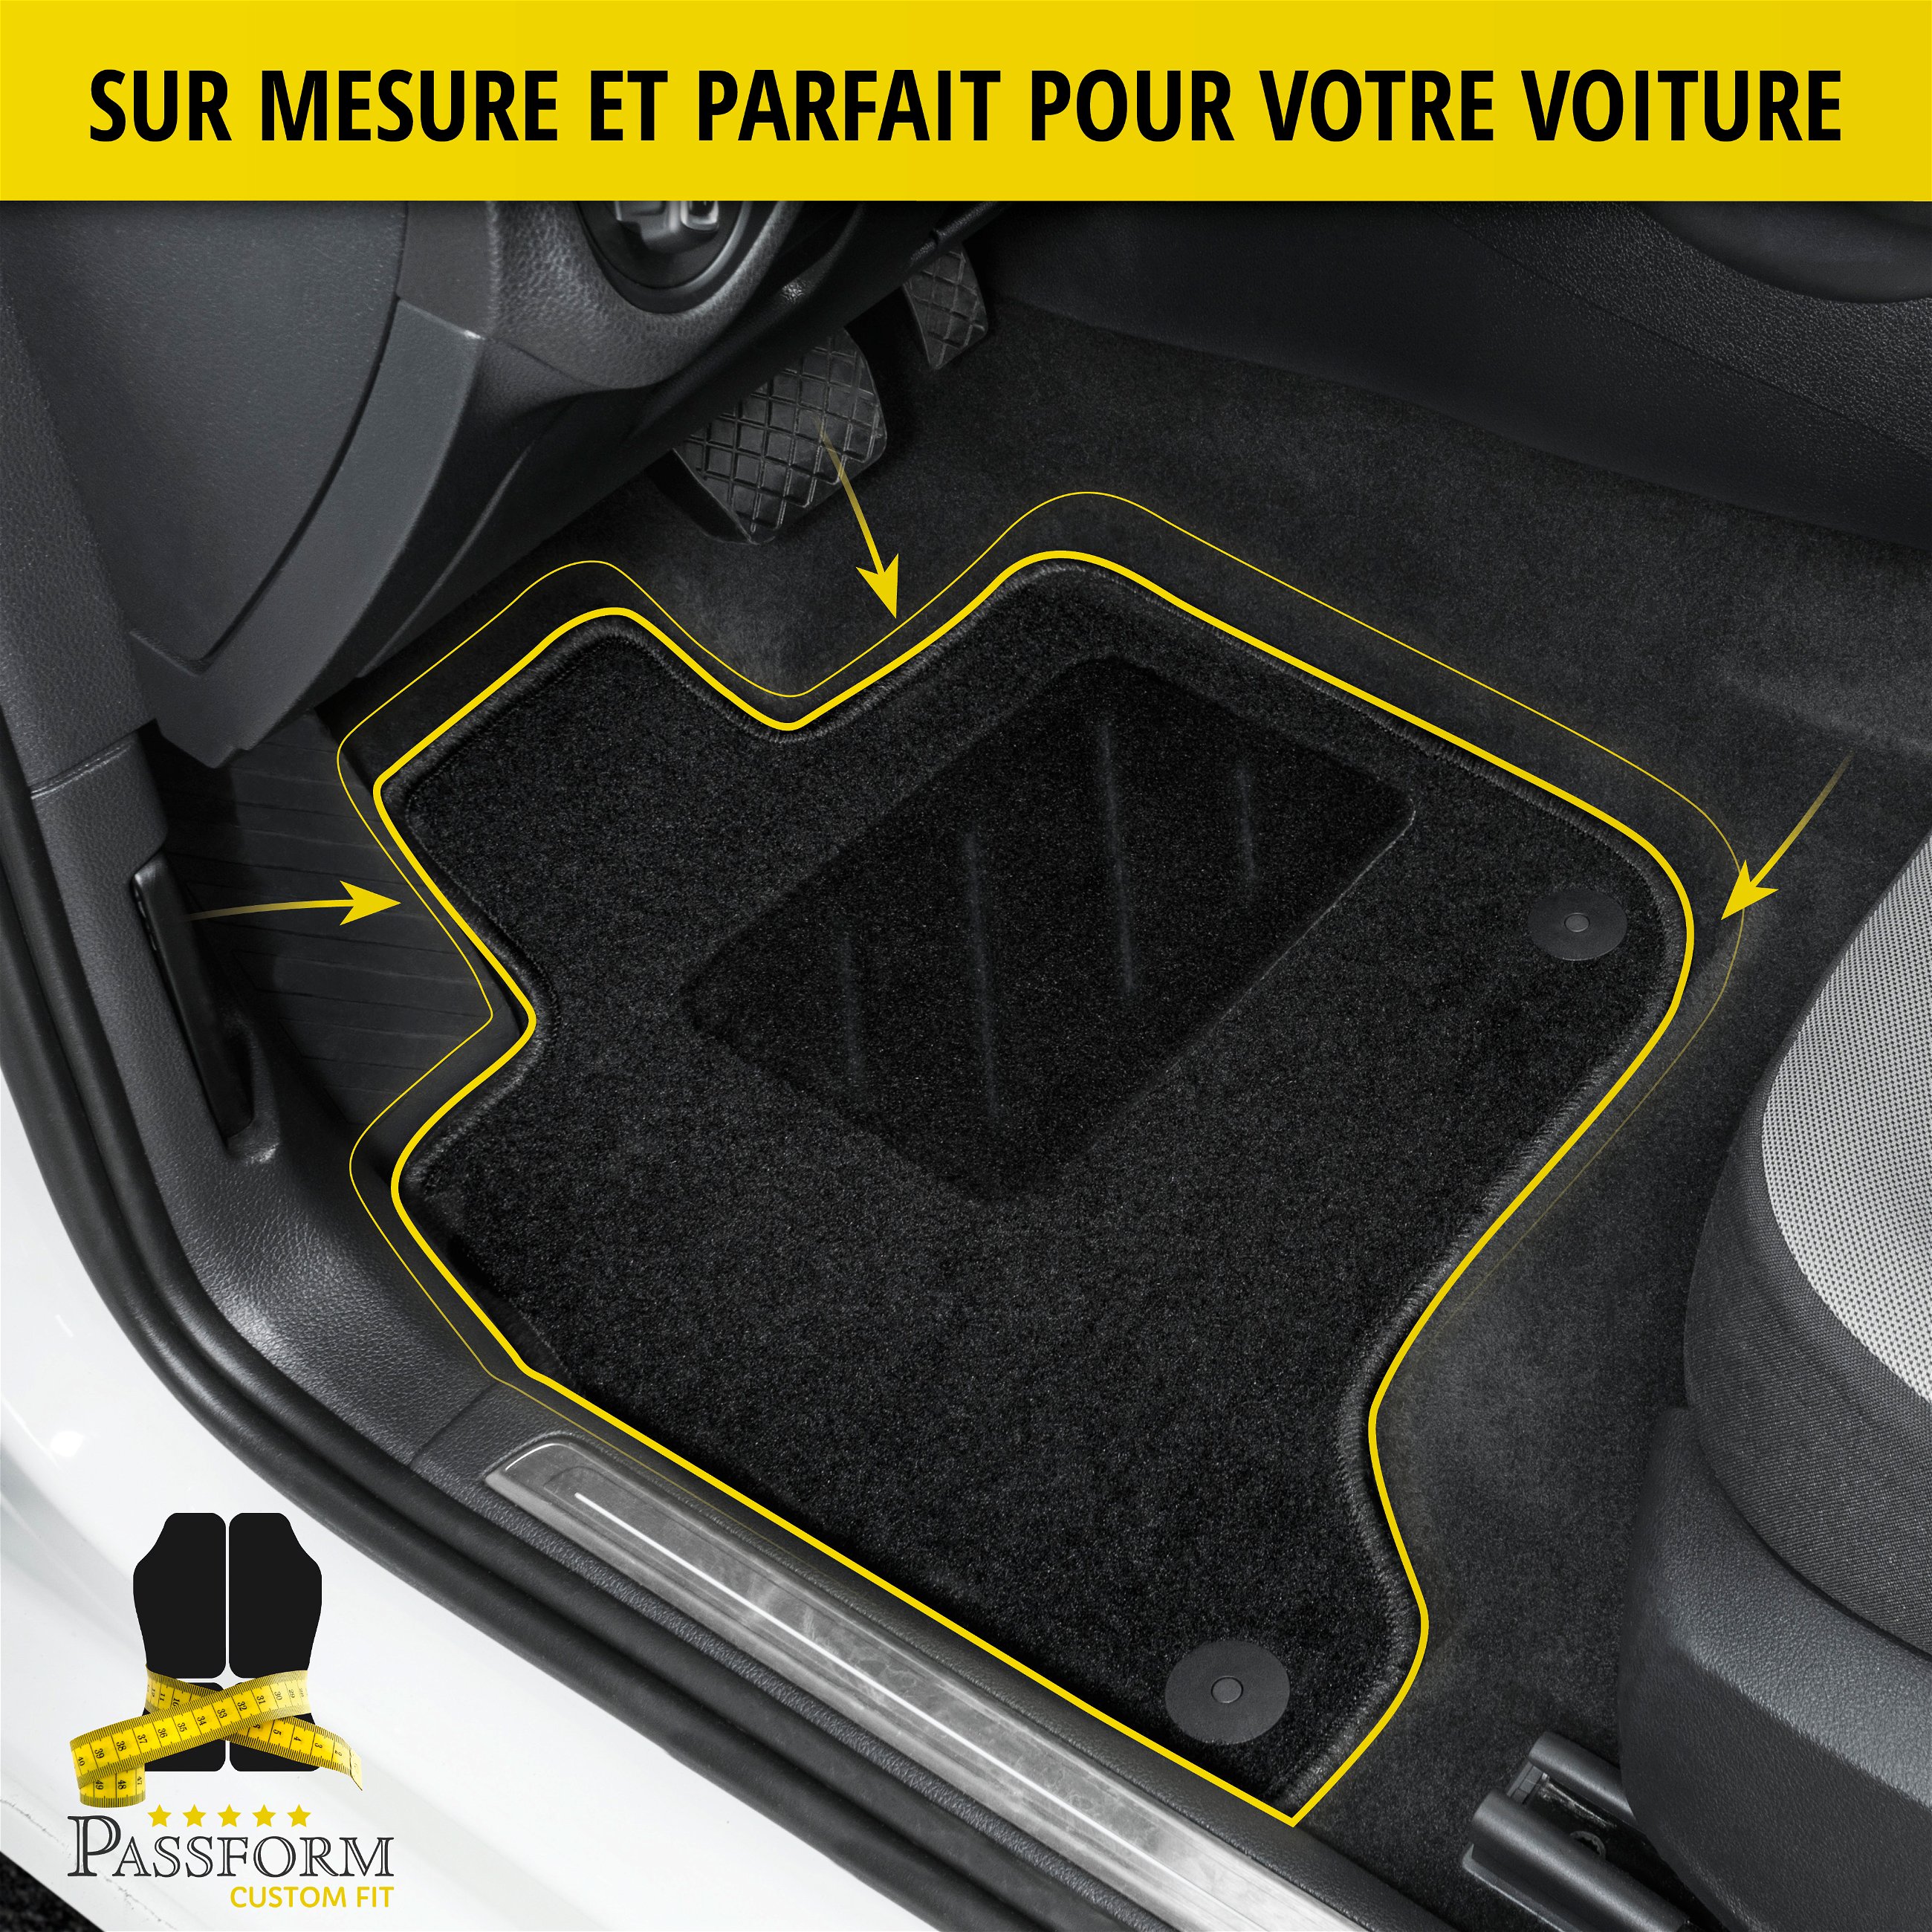 Tapis de sol pour Renault Talisman 06/2015- auj.